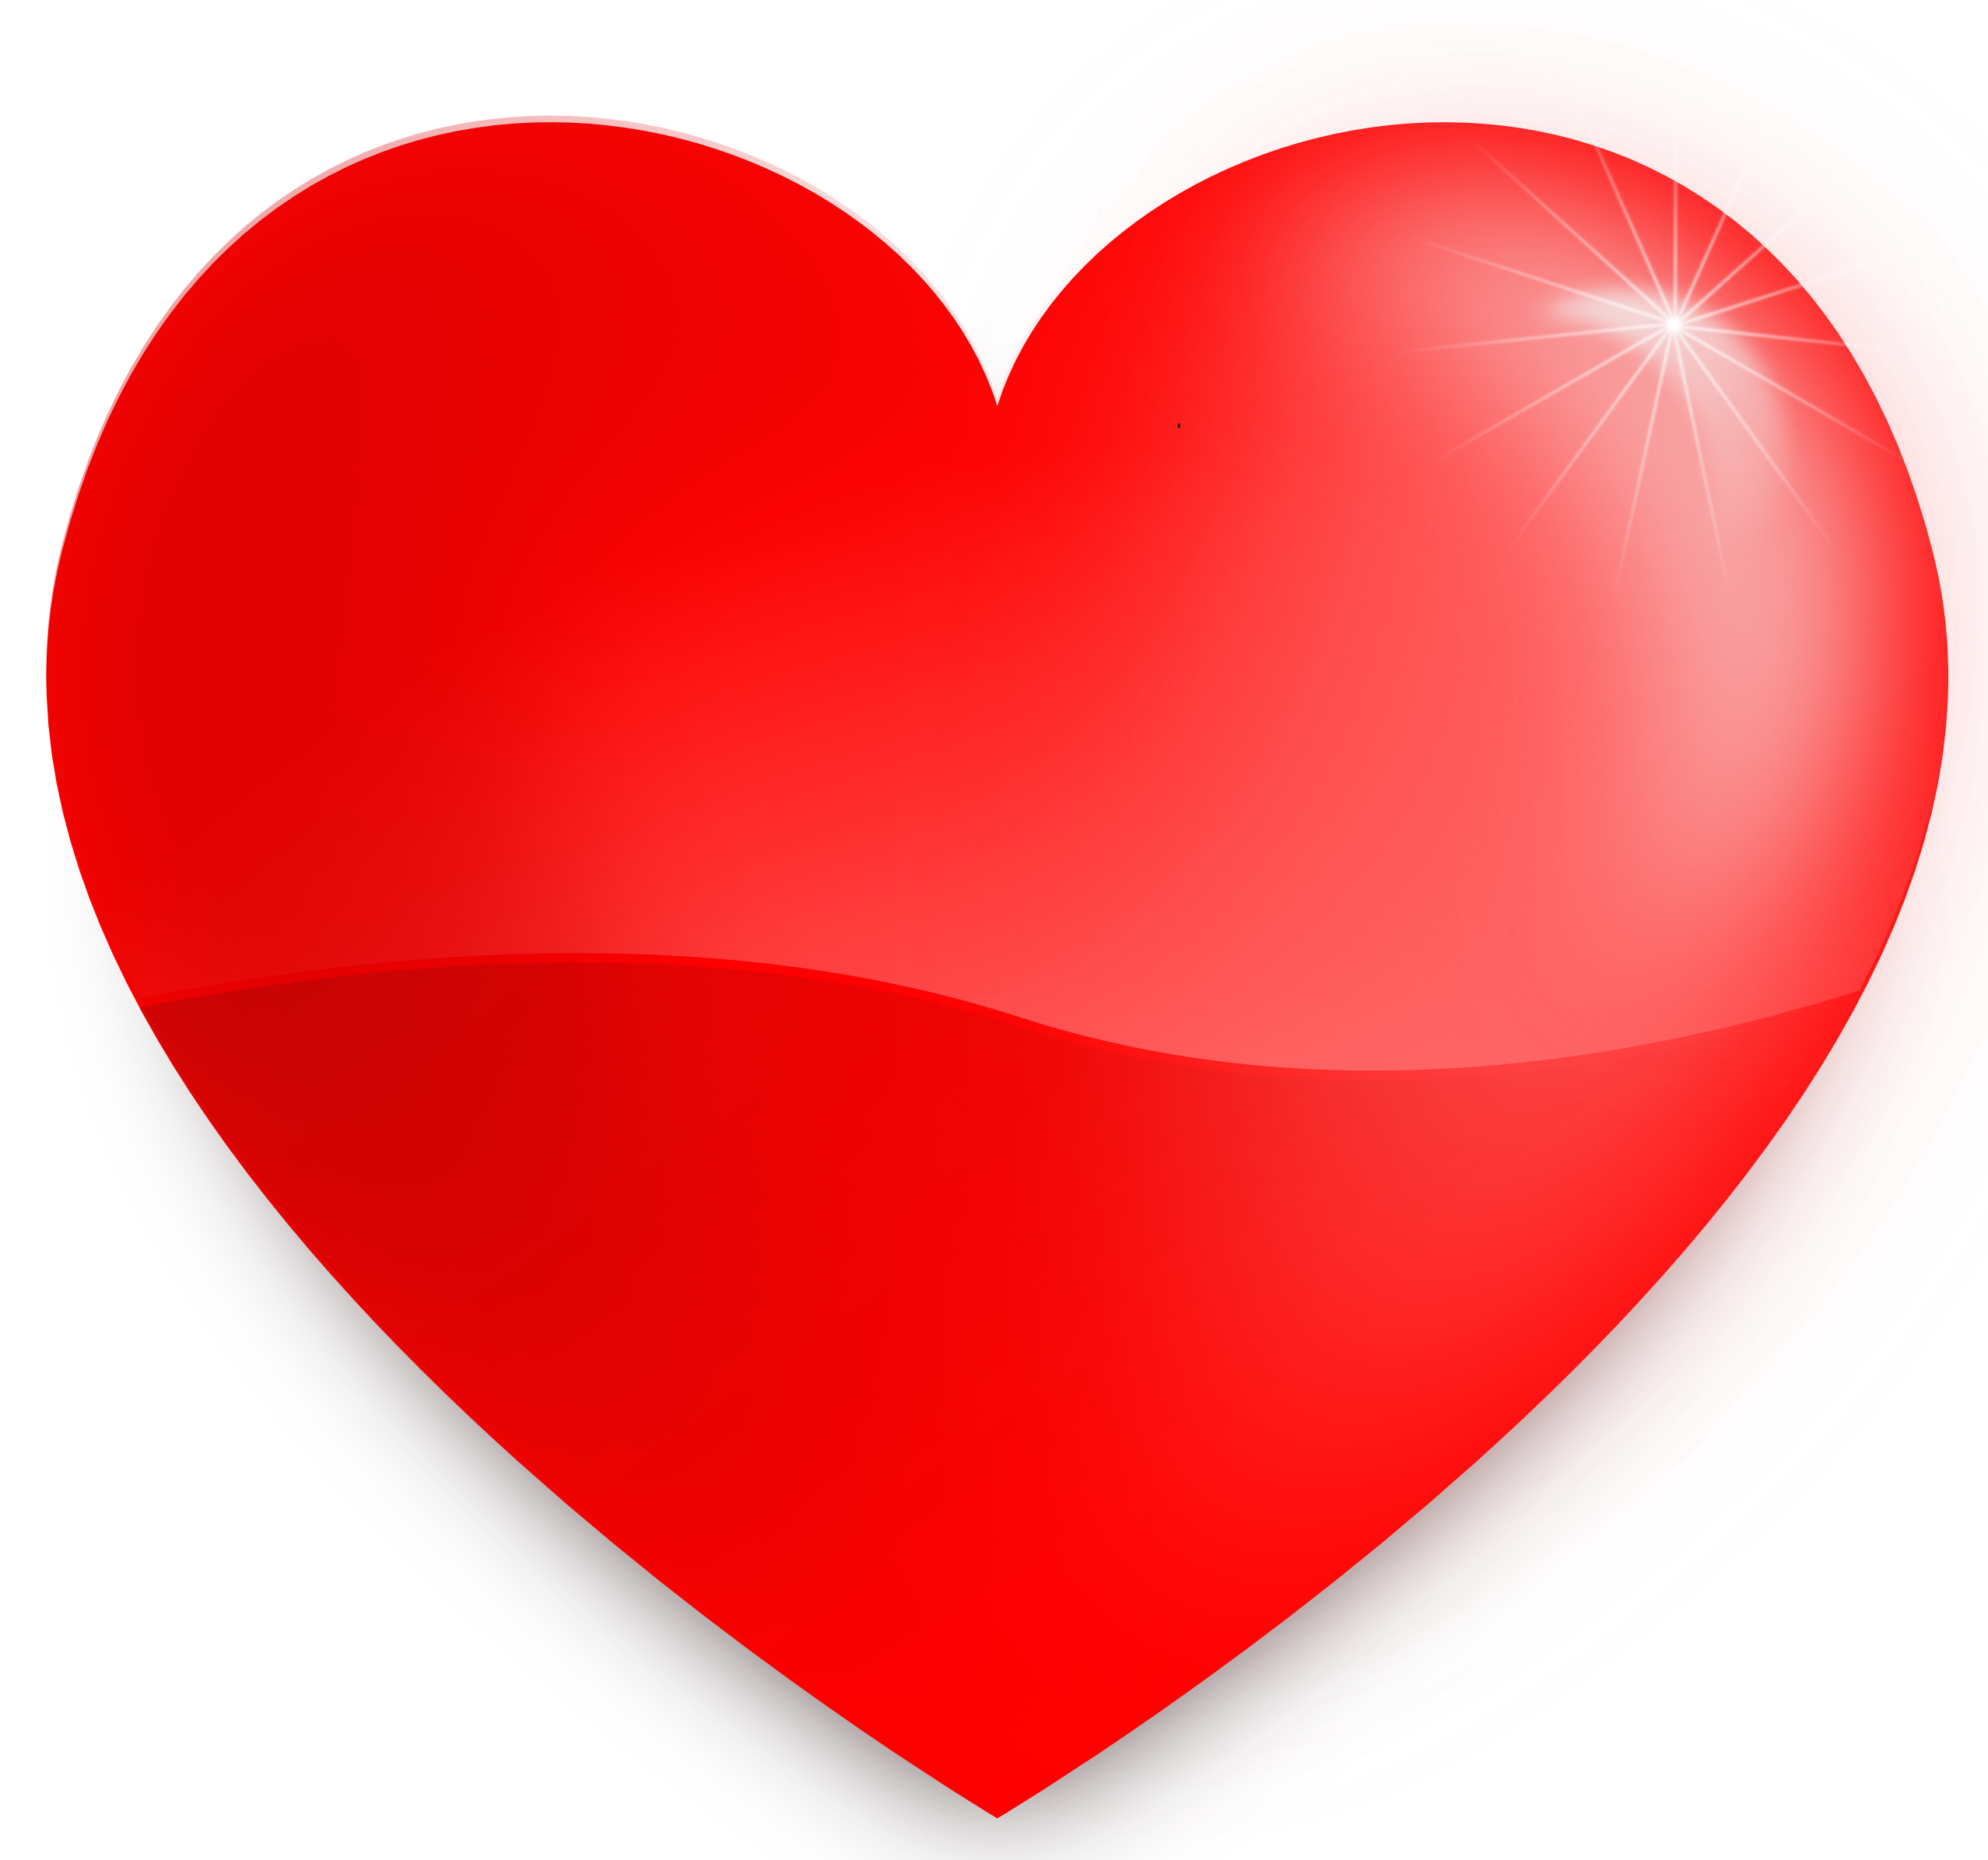 Download PNG image - Love Artwork Heart Download PNG Image 